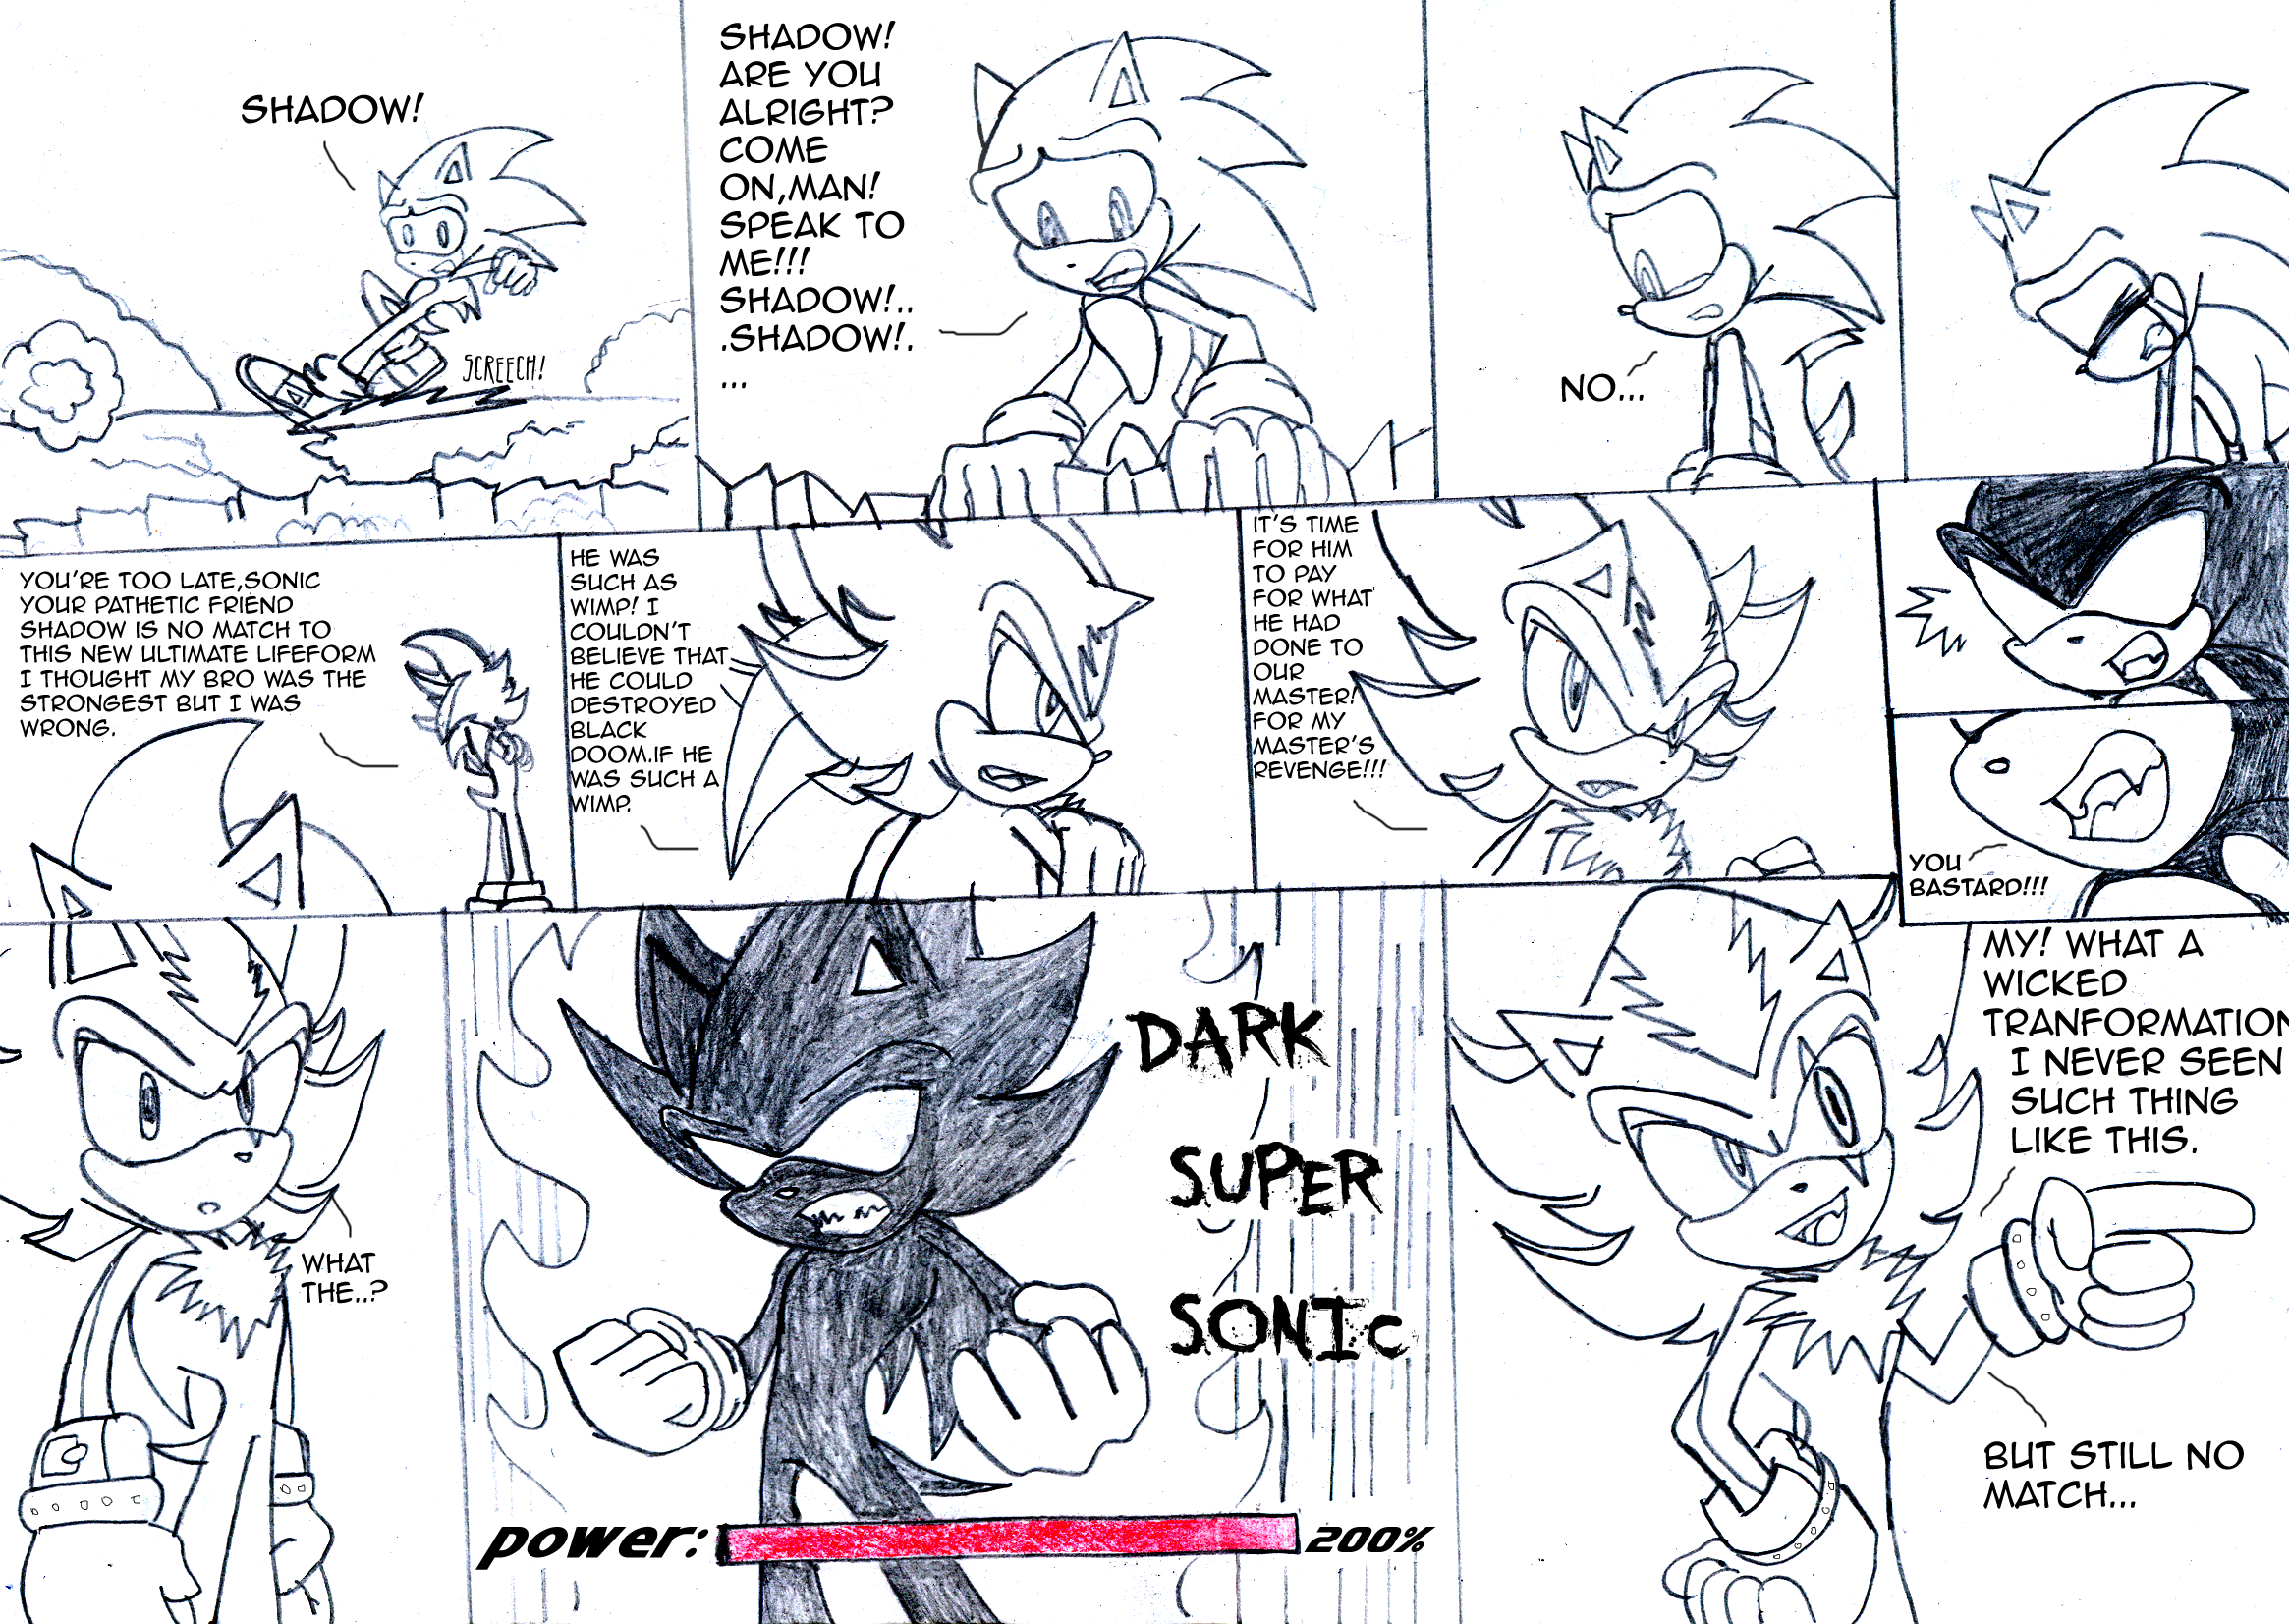 Sonic-Shadow-Silver.:lineart:. by DarkCatSoul on DeviantArt